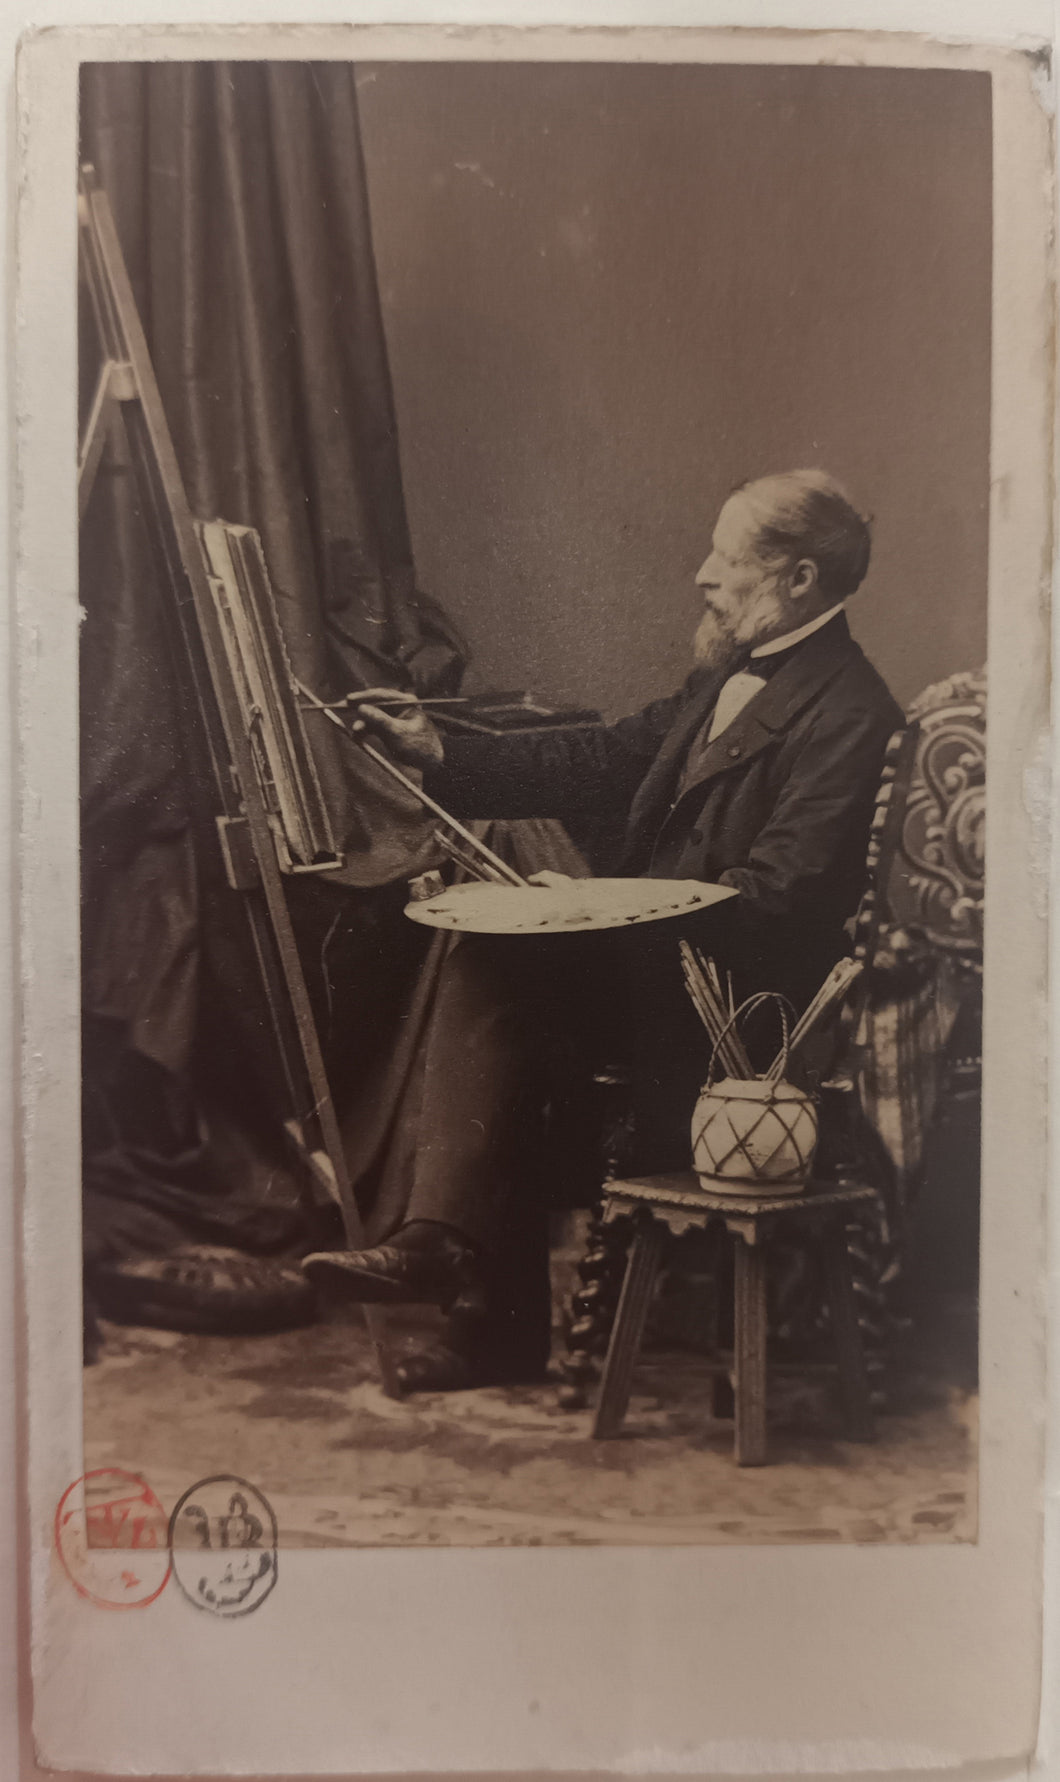 Cartes de visite du peintre Gabriel-Alexandre Decamps (1803 † 1860). Vers 1860.